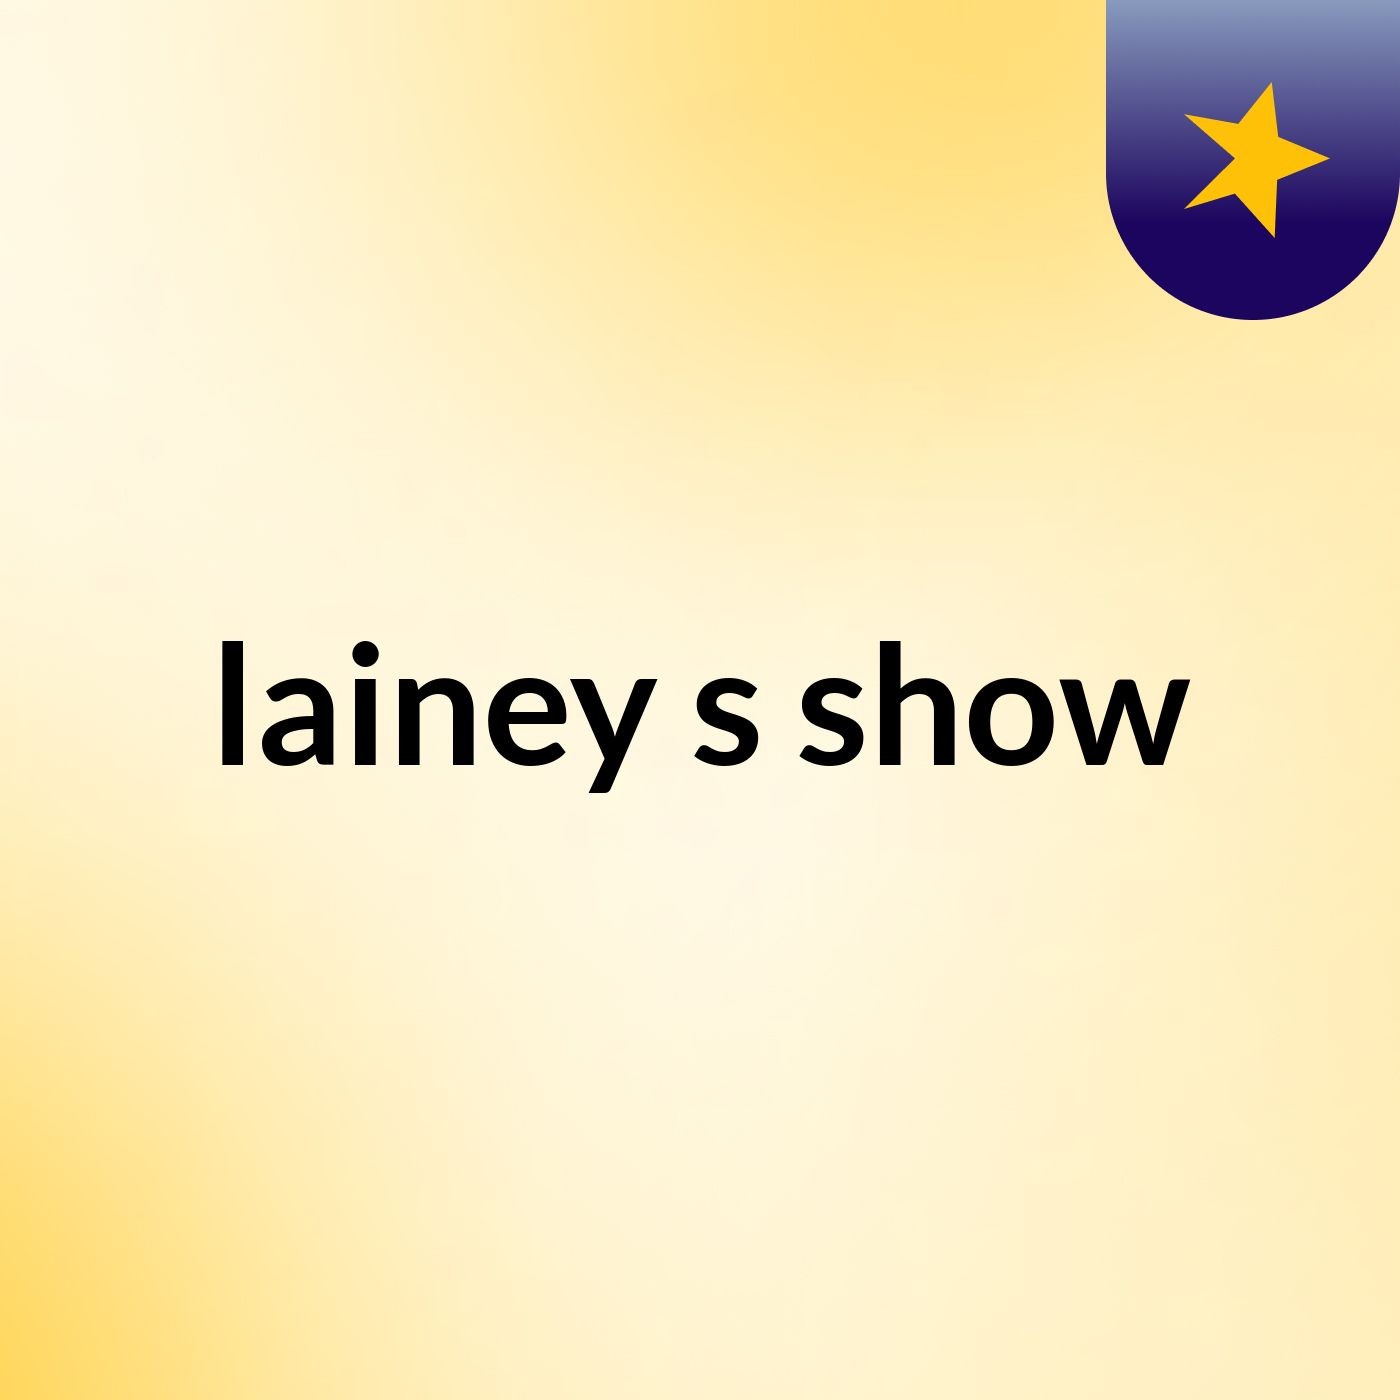 lainey's show